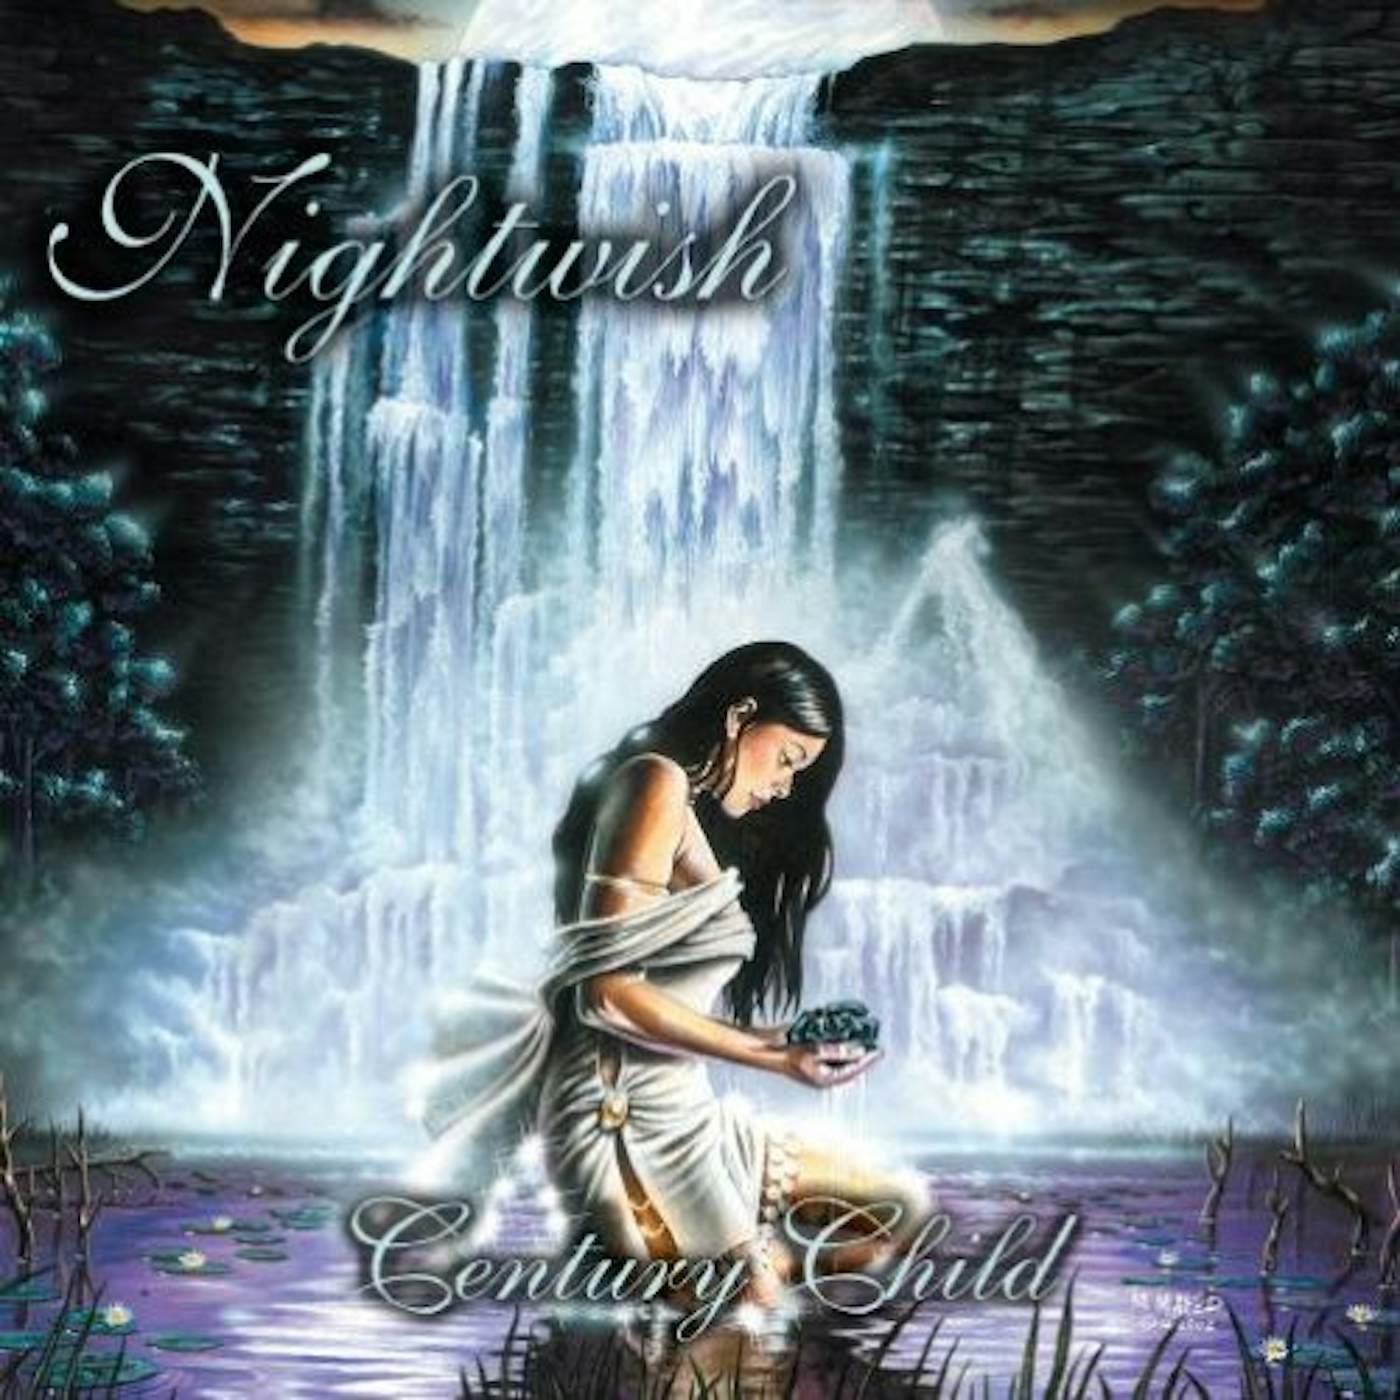 Nightwish CENTURY CHILD CD